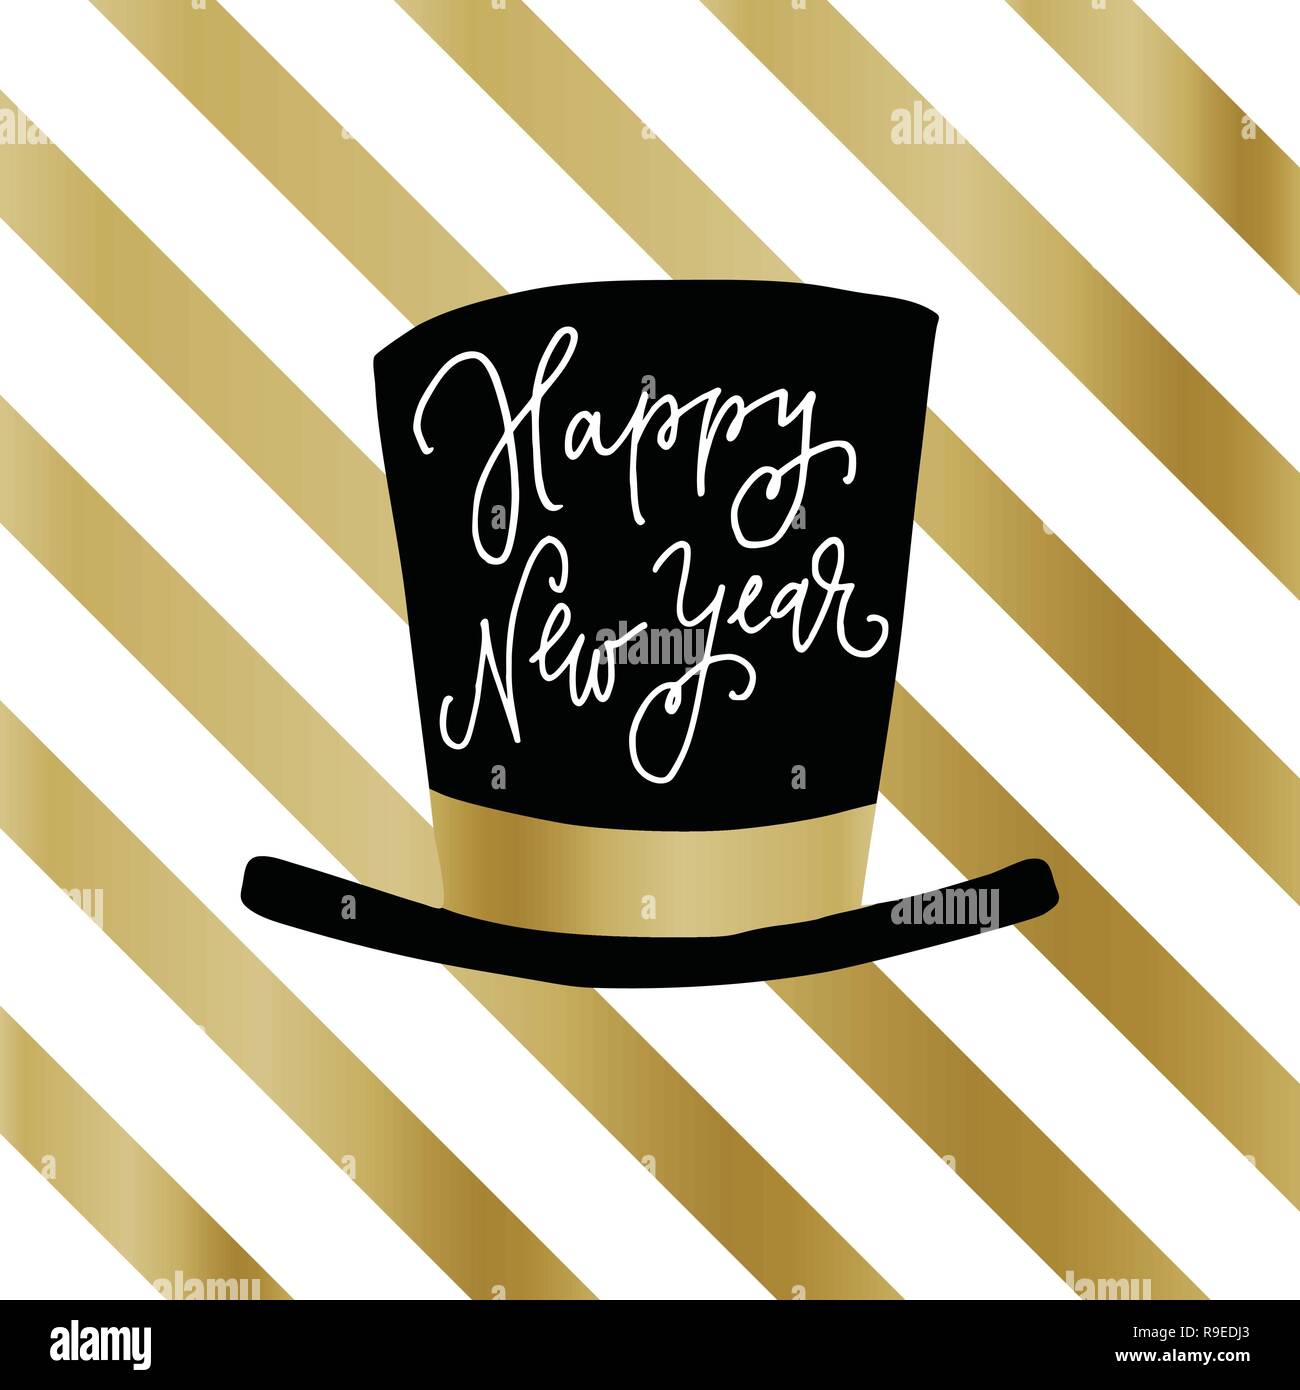 Bonne année carte de voeux, invitation. Party hat avec plus de texte comportant des rayures blanches et dorées. Concept de célébration. Fond d'illustration vectorielle moderne. Illustration de Vecteur